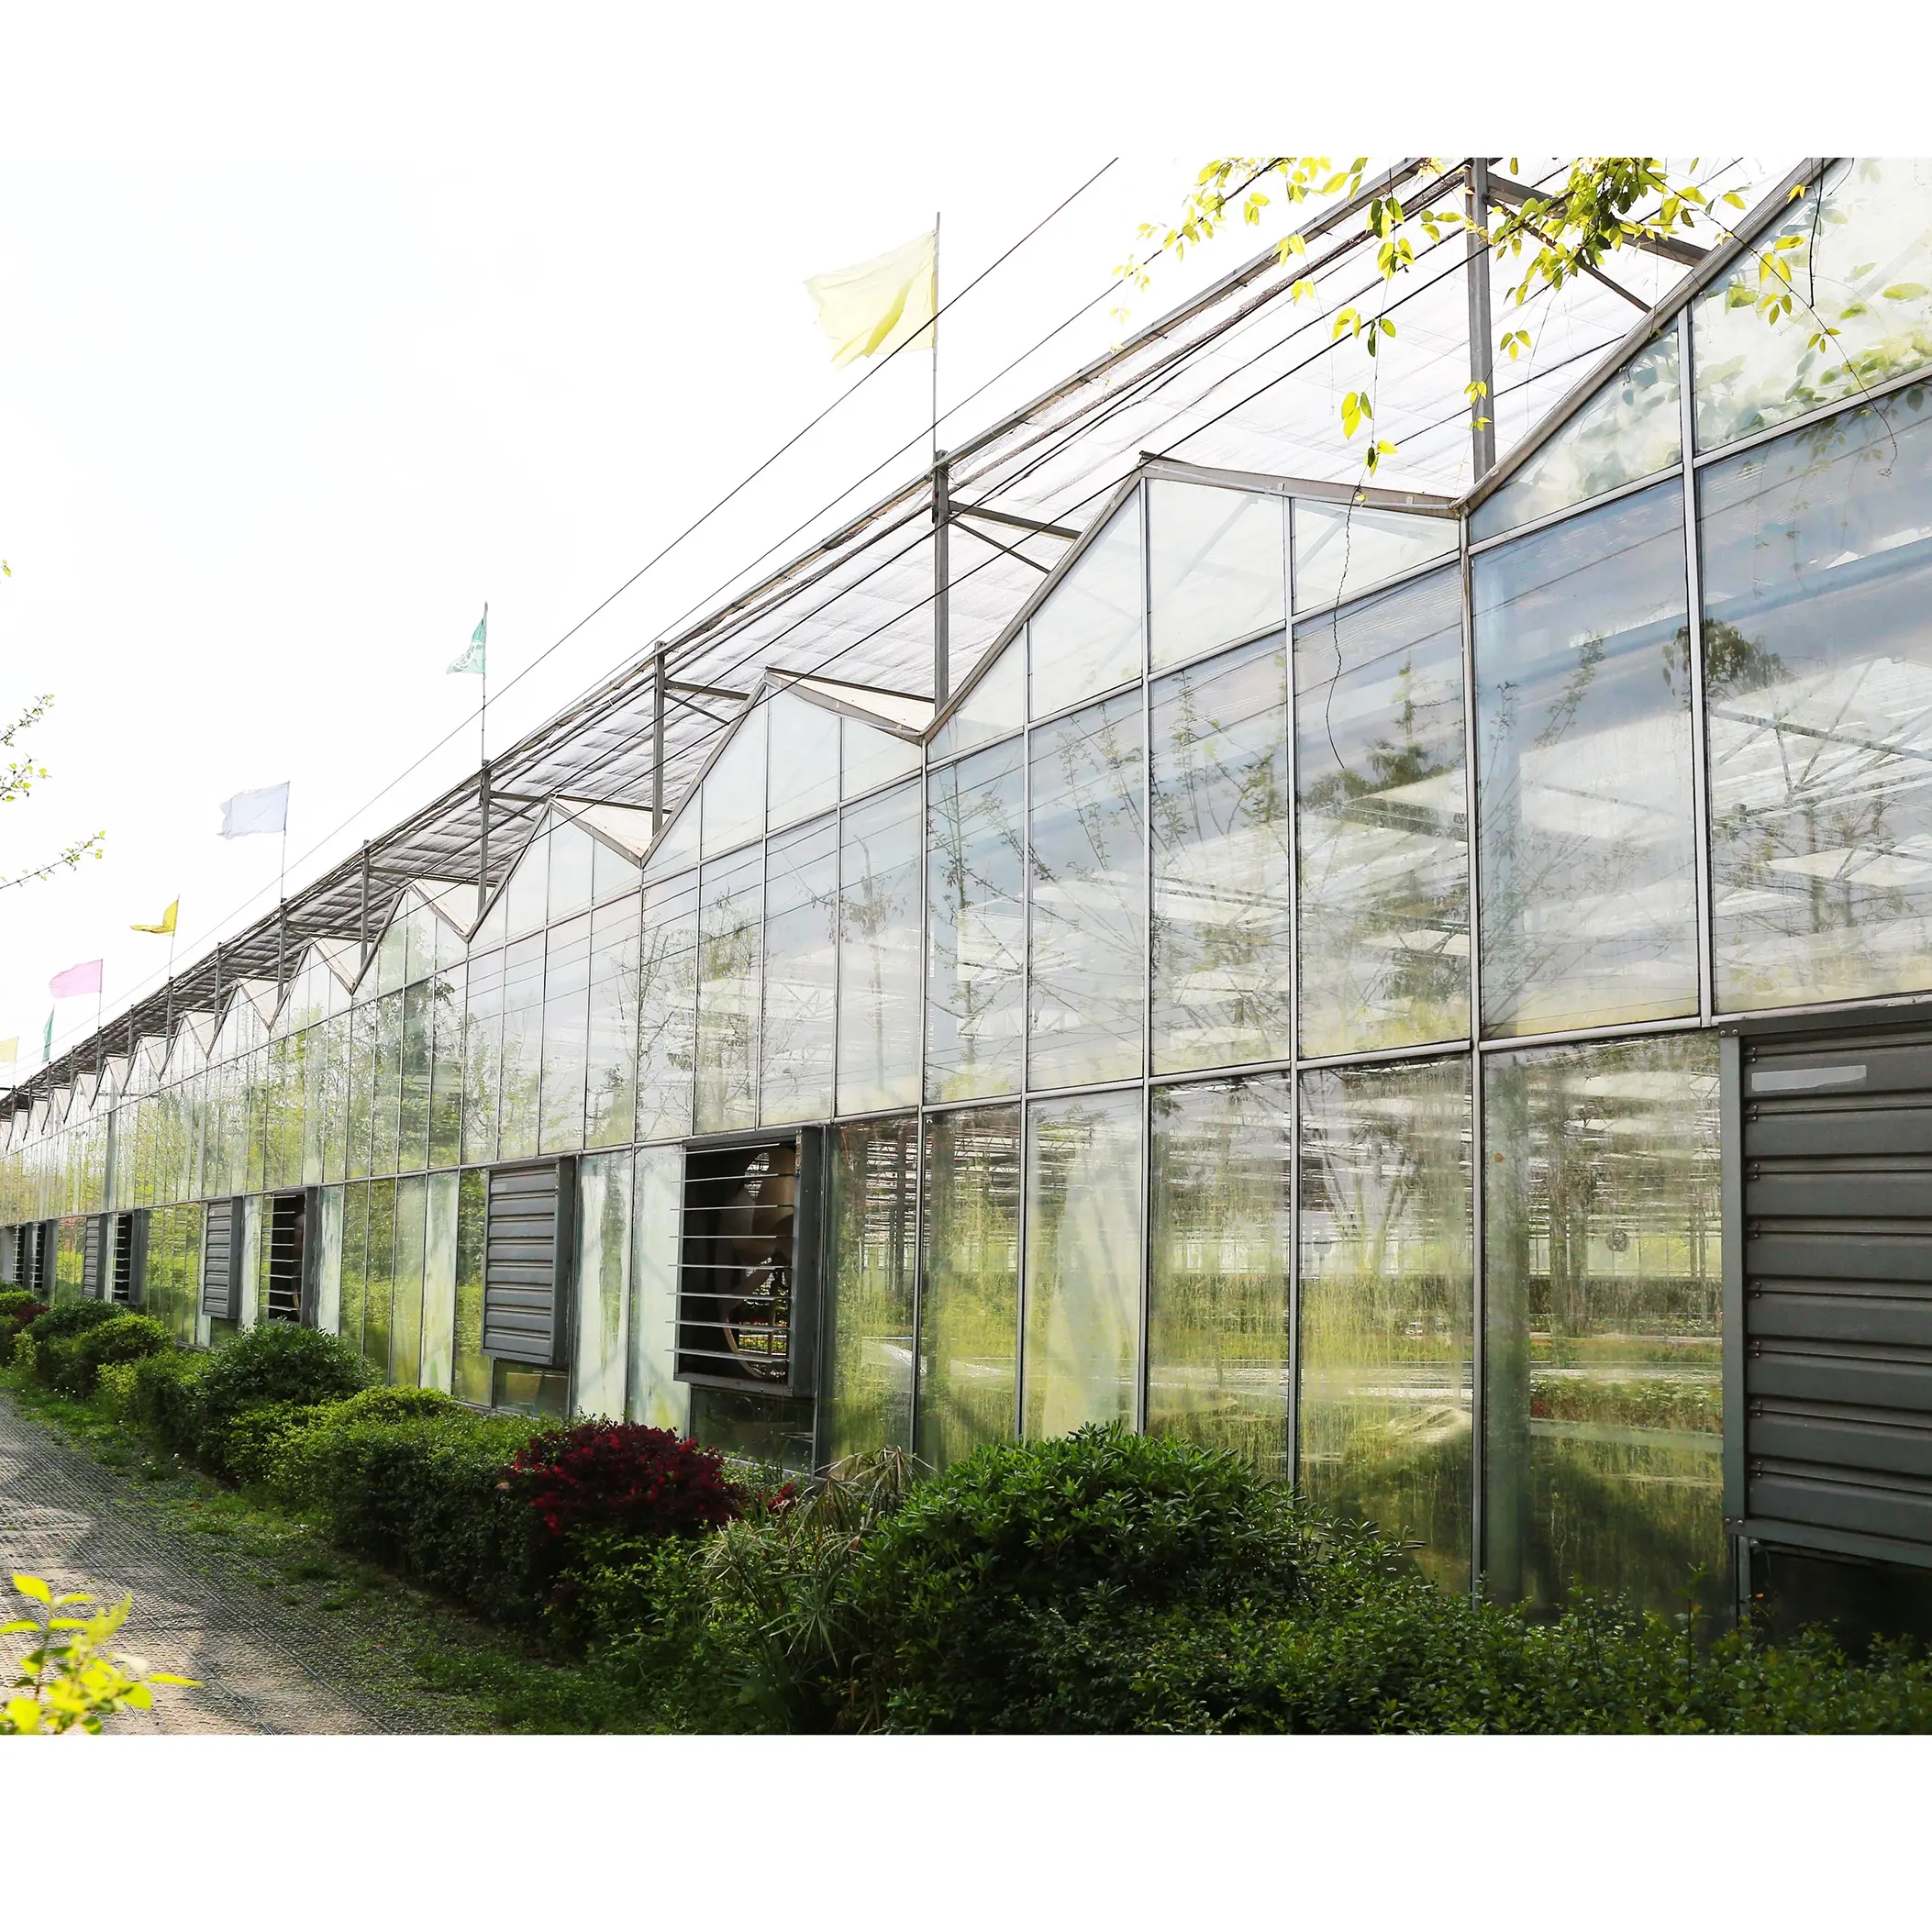 Großes kommerzielles Venlo-Glas gewächshaus mit mehreren Spannweiten